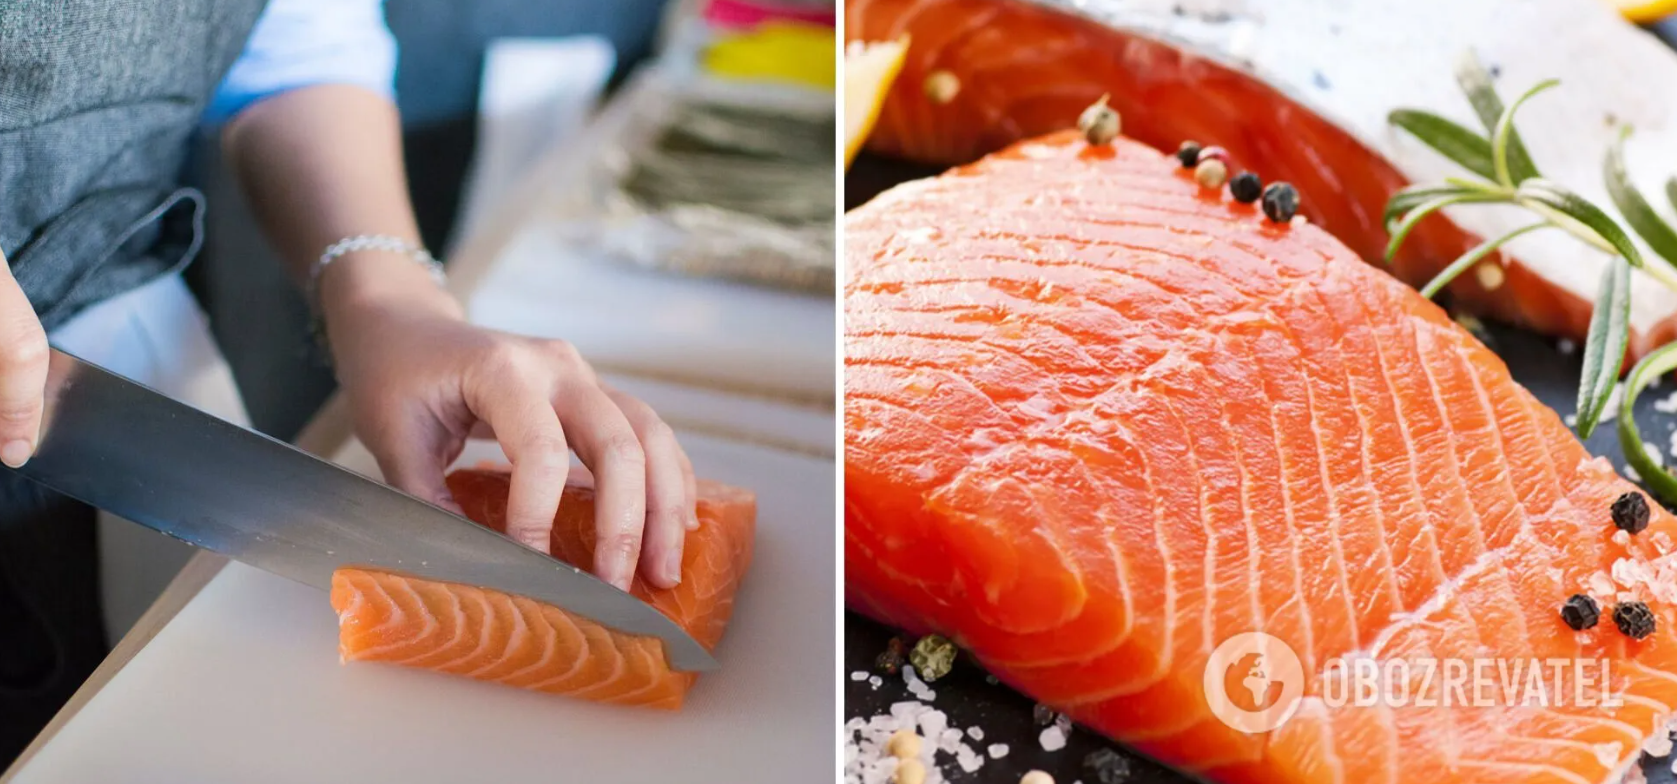 Nazwano najbardziej szkodliwą czerwoną rybę: jak rozpoznać podrobione produkty